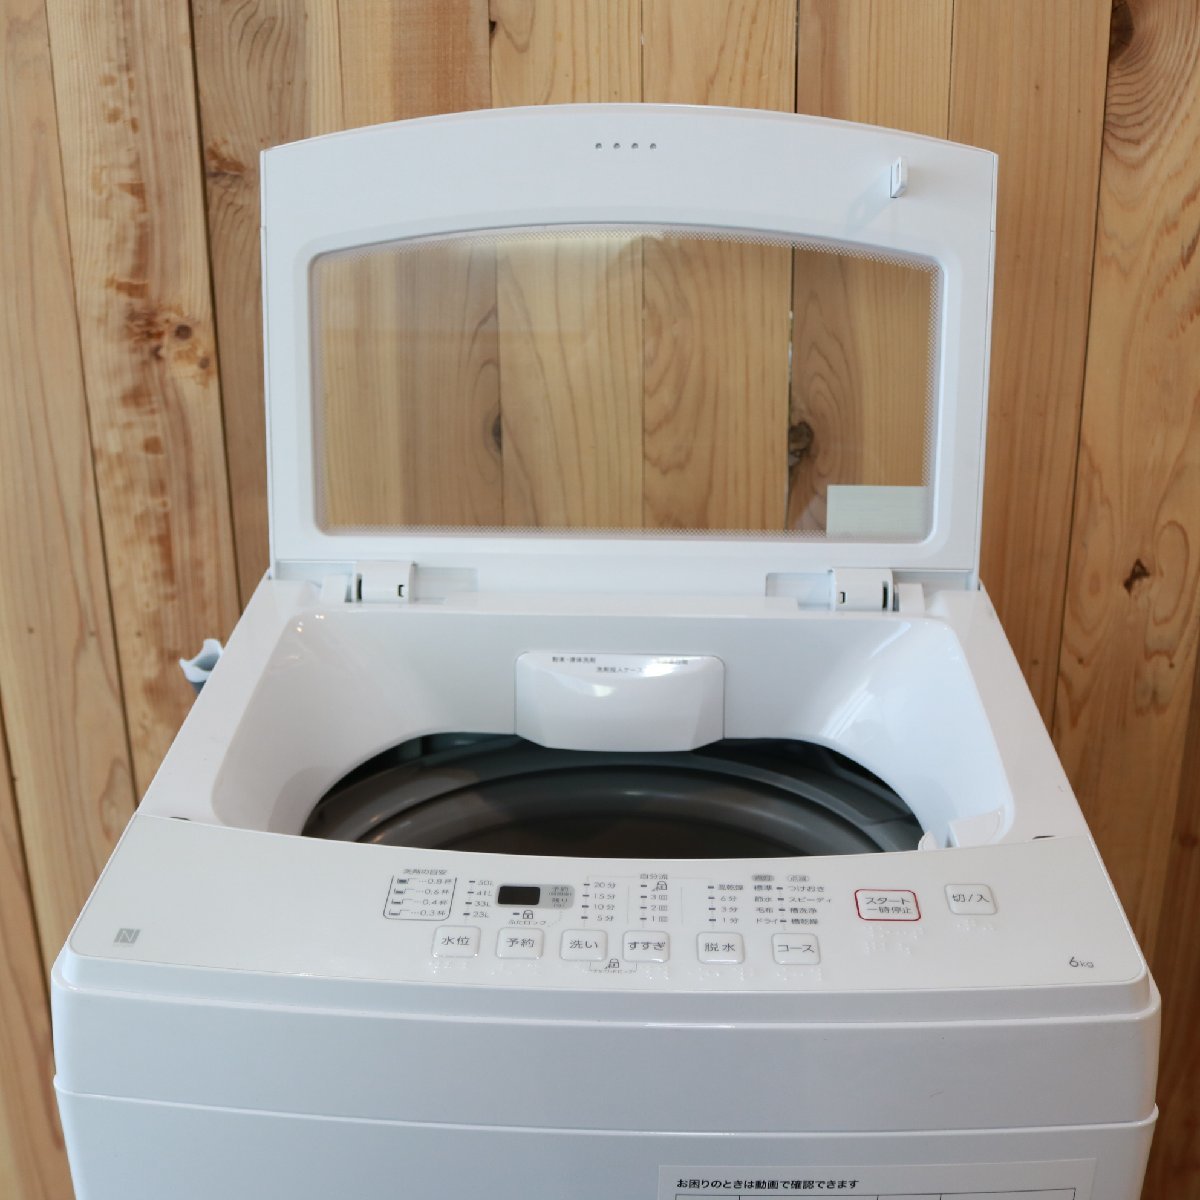 287)【美品/高年式】 ニトリ 全自動洗濯機 NTR60 6kg 2022年製 ガラス 